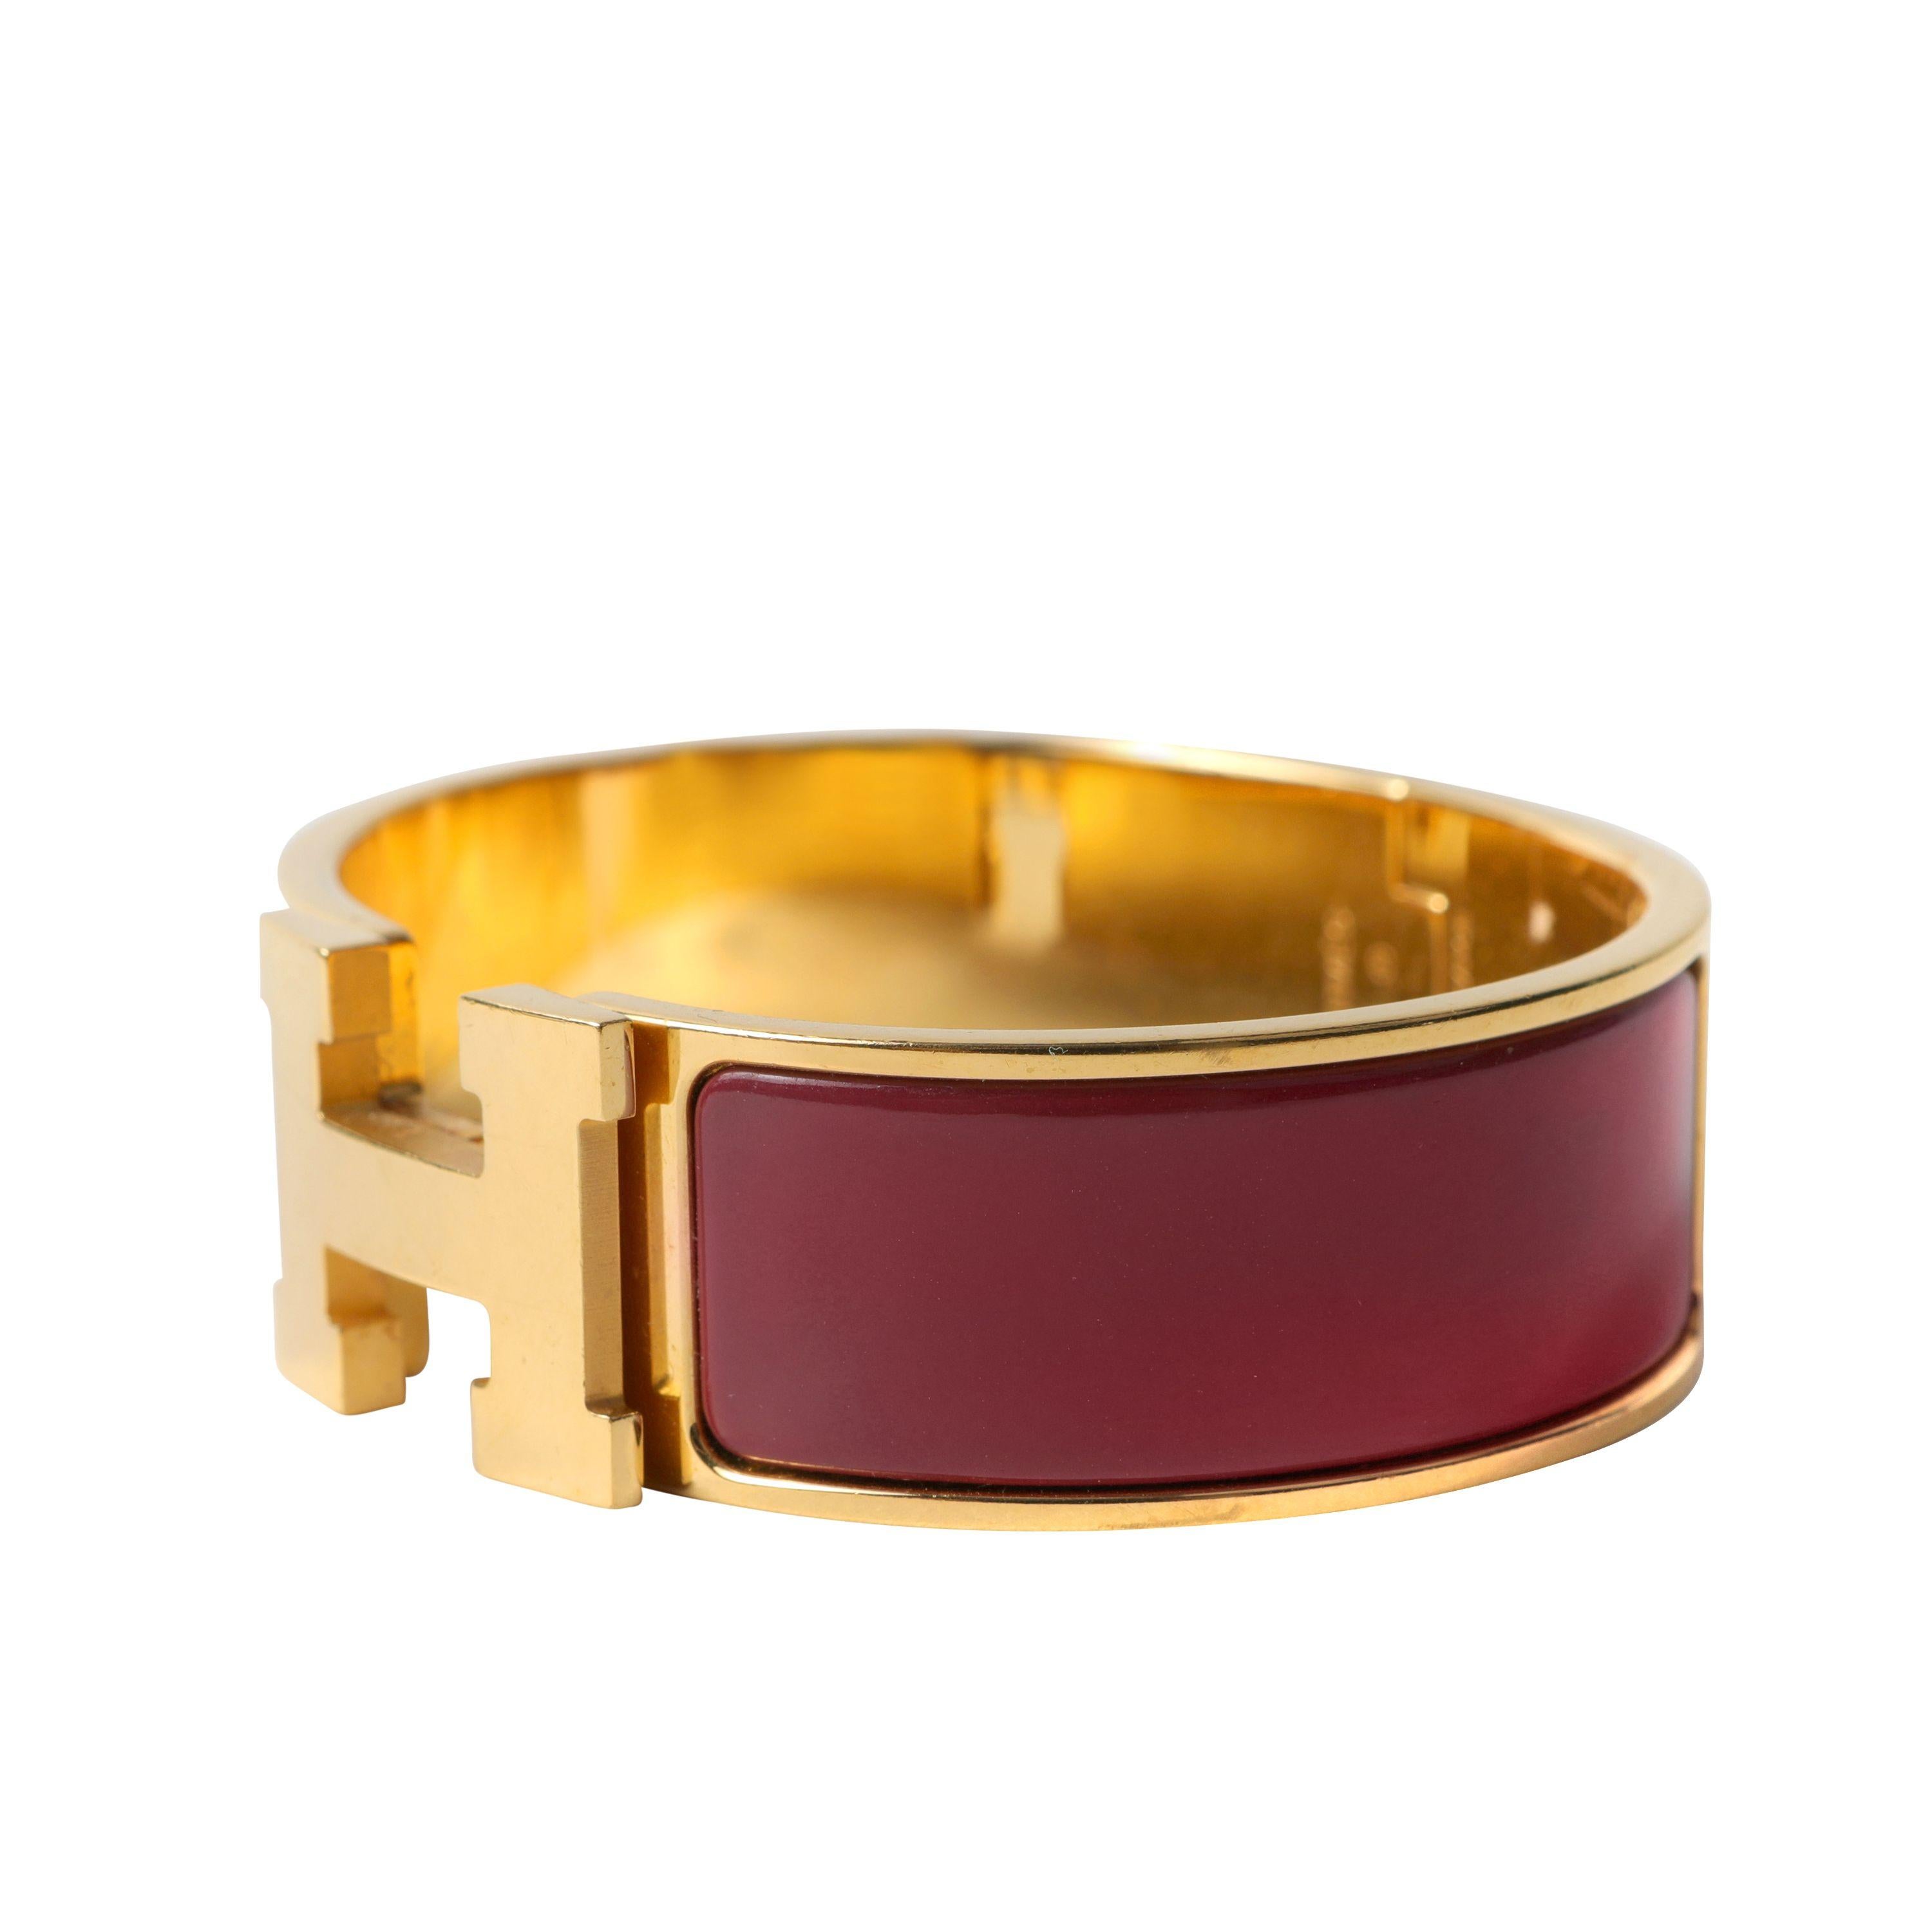 Ce bracelet authentique Hermès Burgundy Wide Clic Clac est en excellent état.  Émail bourgogne avec quincaillerie dorée et fermeture pivotante en H.  Pochette ou boîte incluse.

PBF 13818
